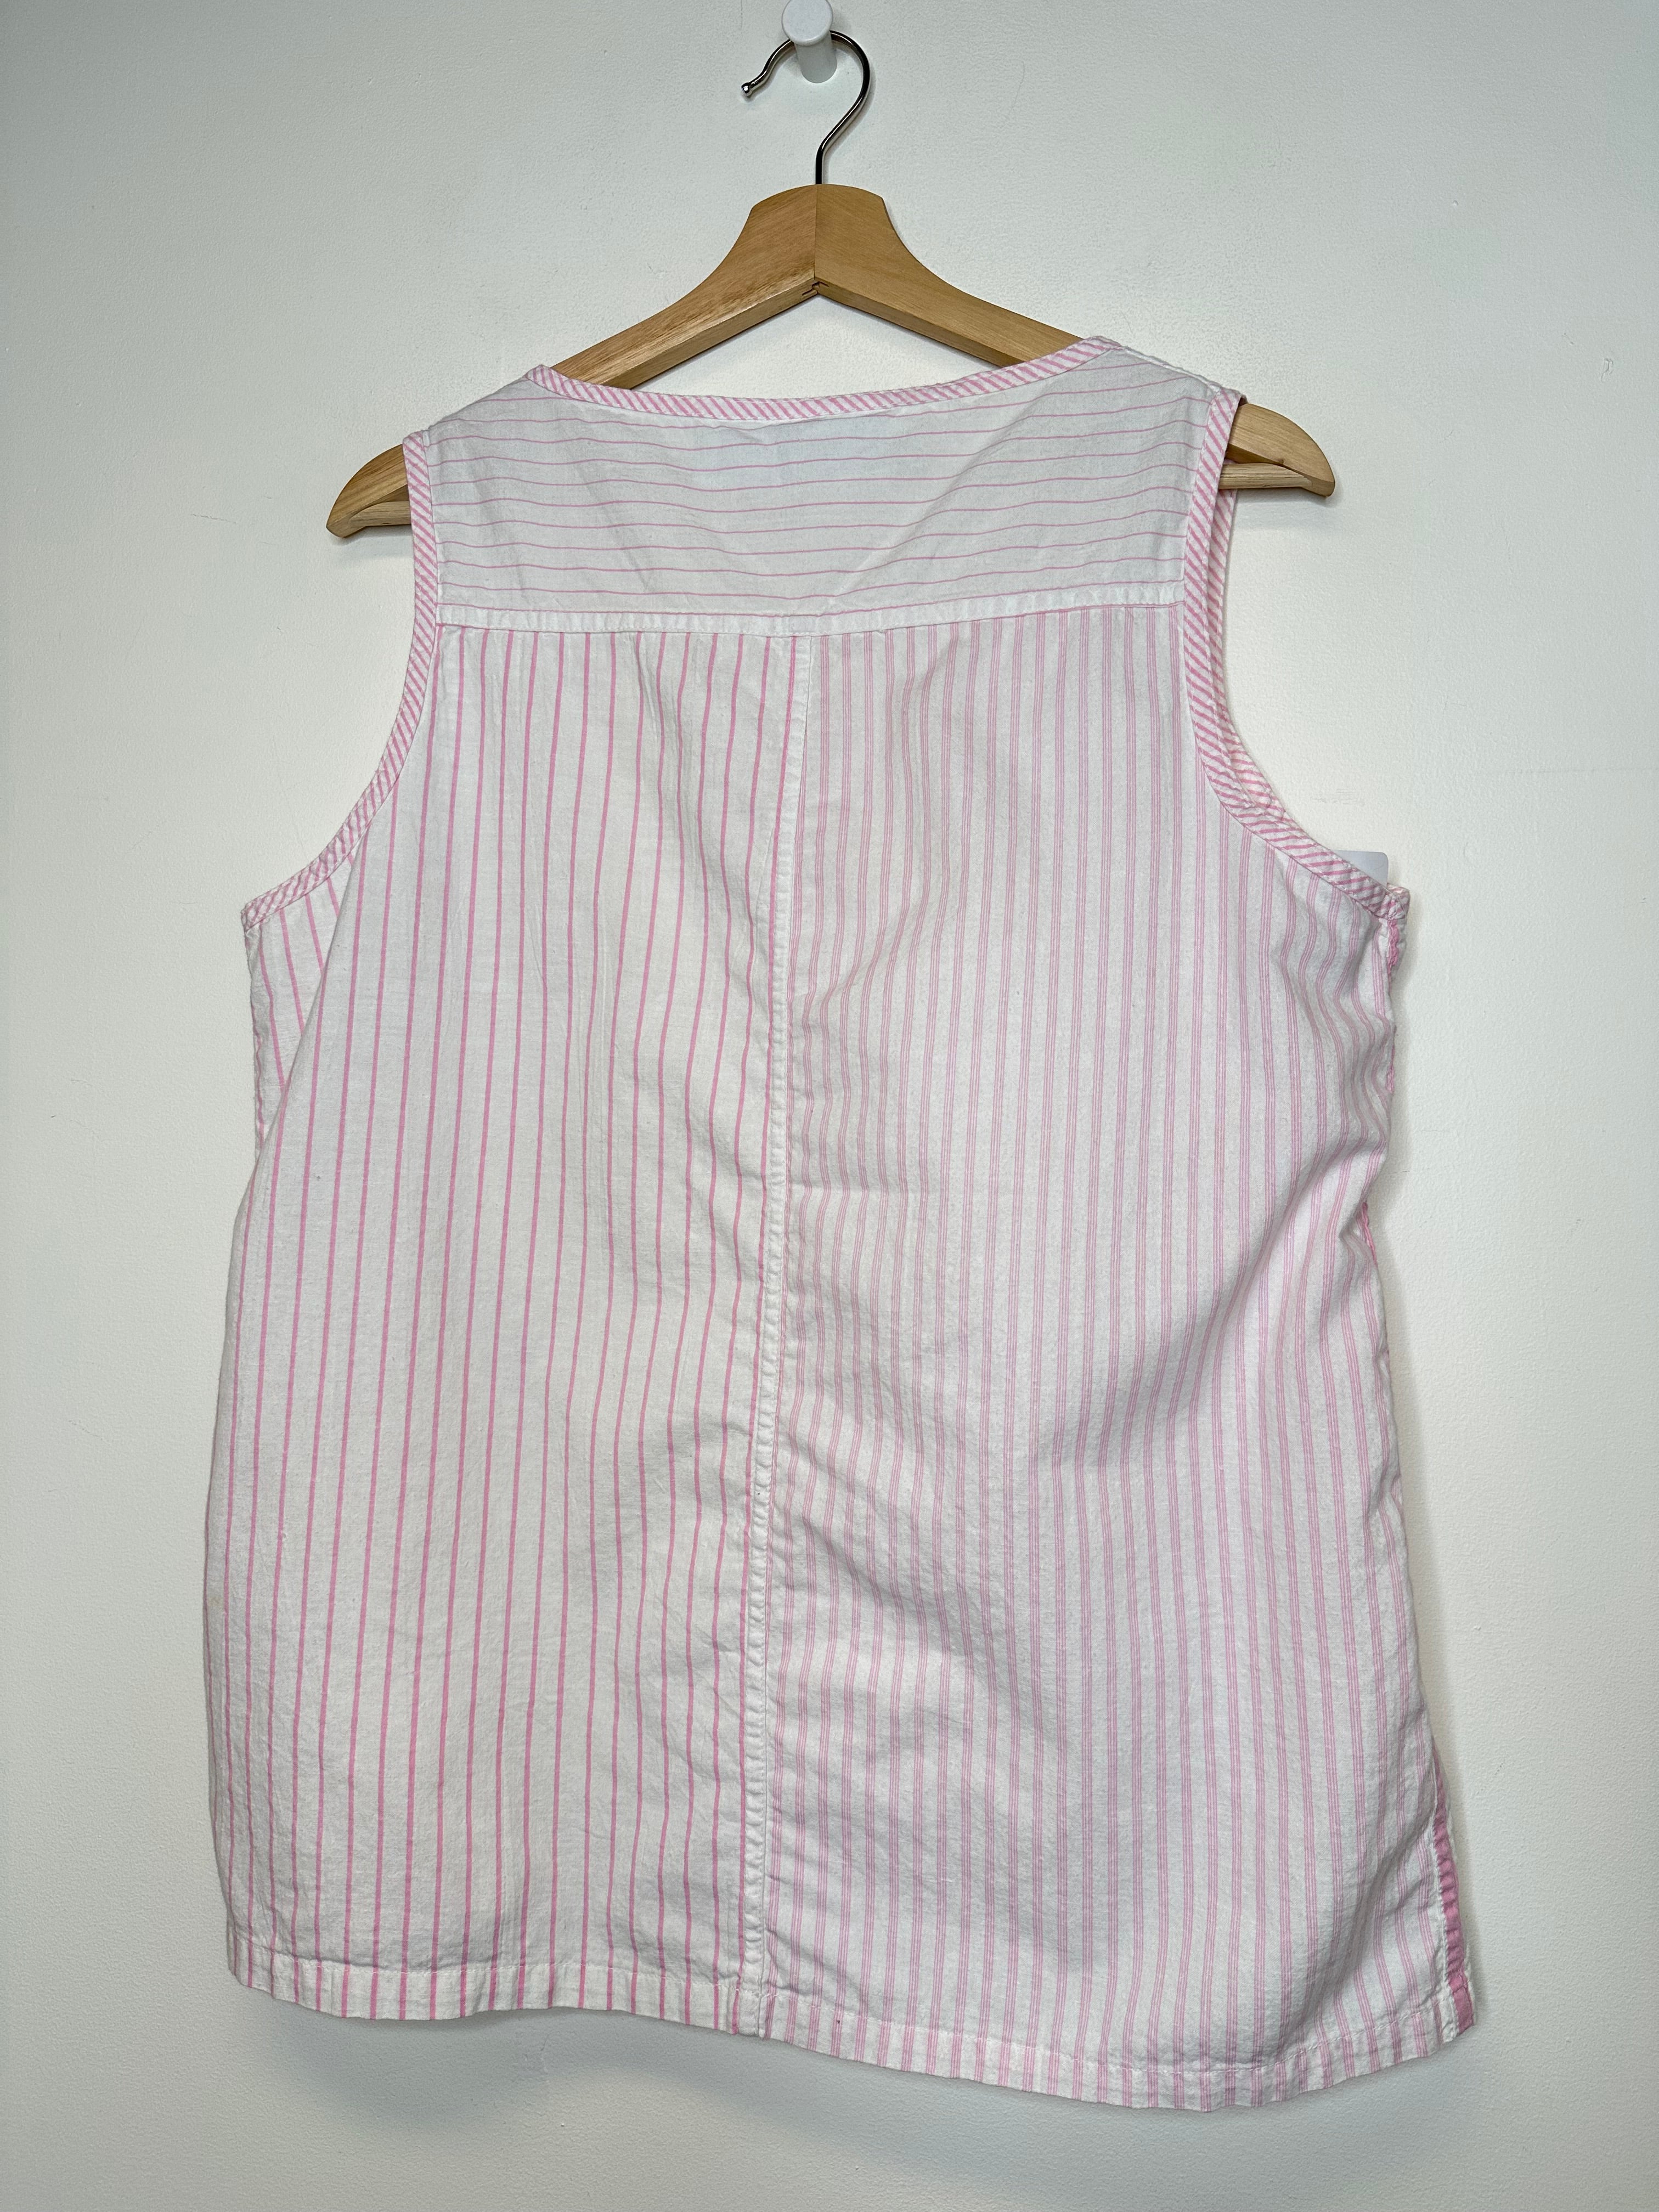 Vintage Pink/White Stripe Tank Top - XL